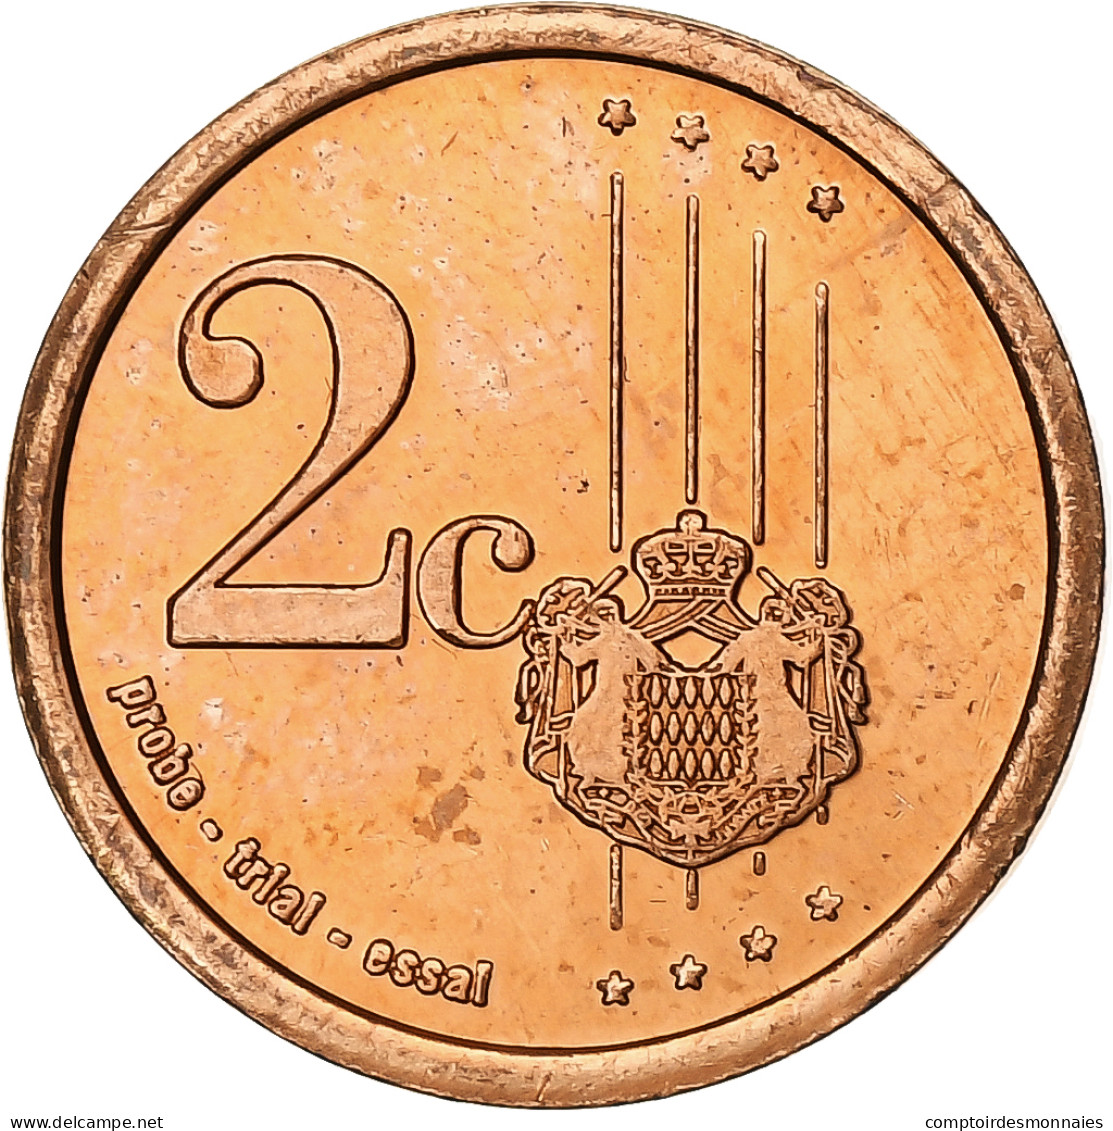 Monaco, 2 Euro Cent, Unofficial Private Coin, 2006, Cuivre Plaqué Acier, SPL+ - Prove Private